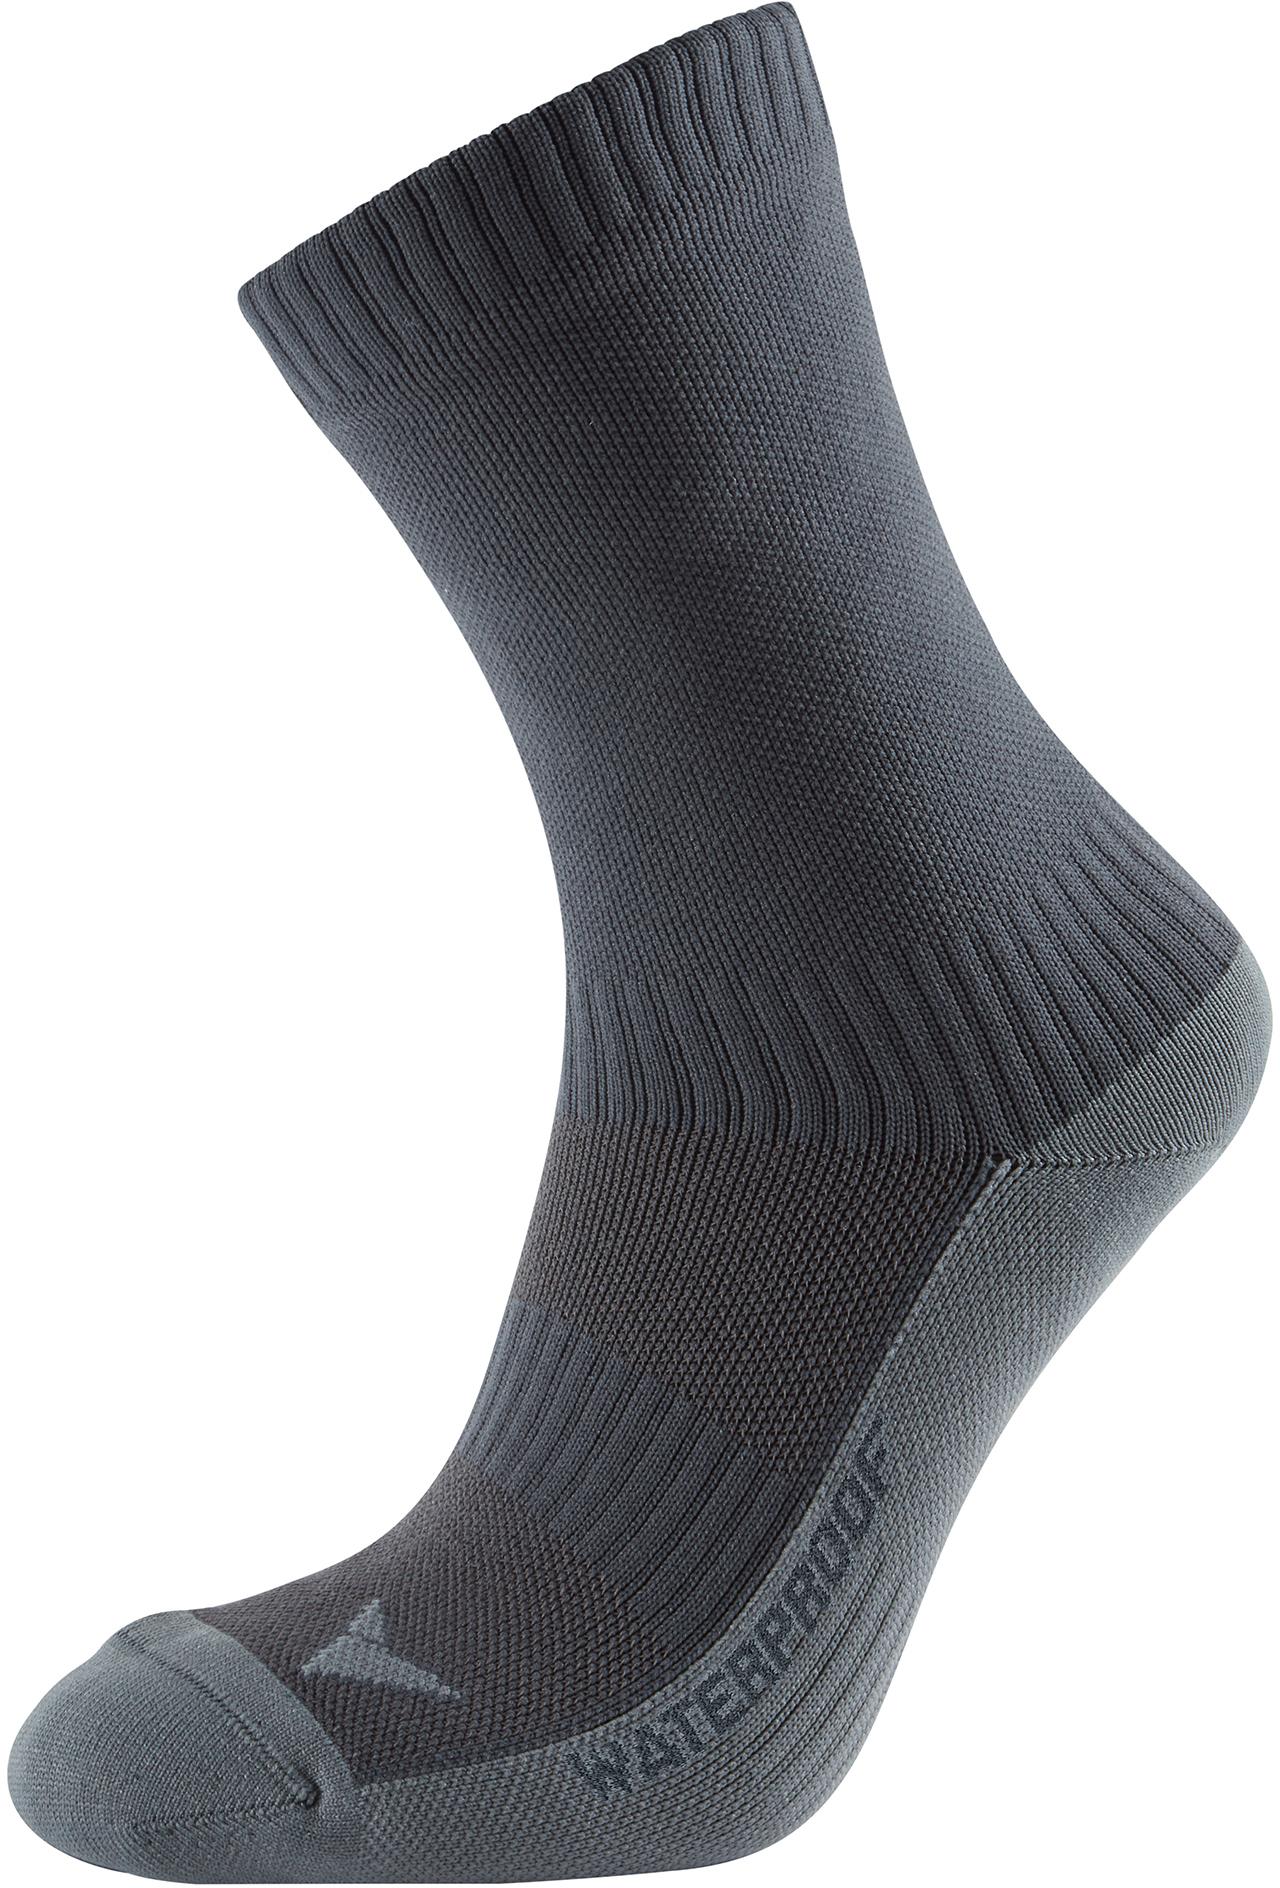 Altura Waterproof Socks Black M/L